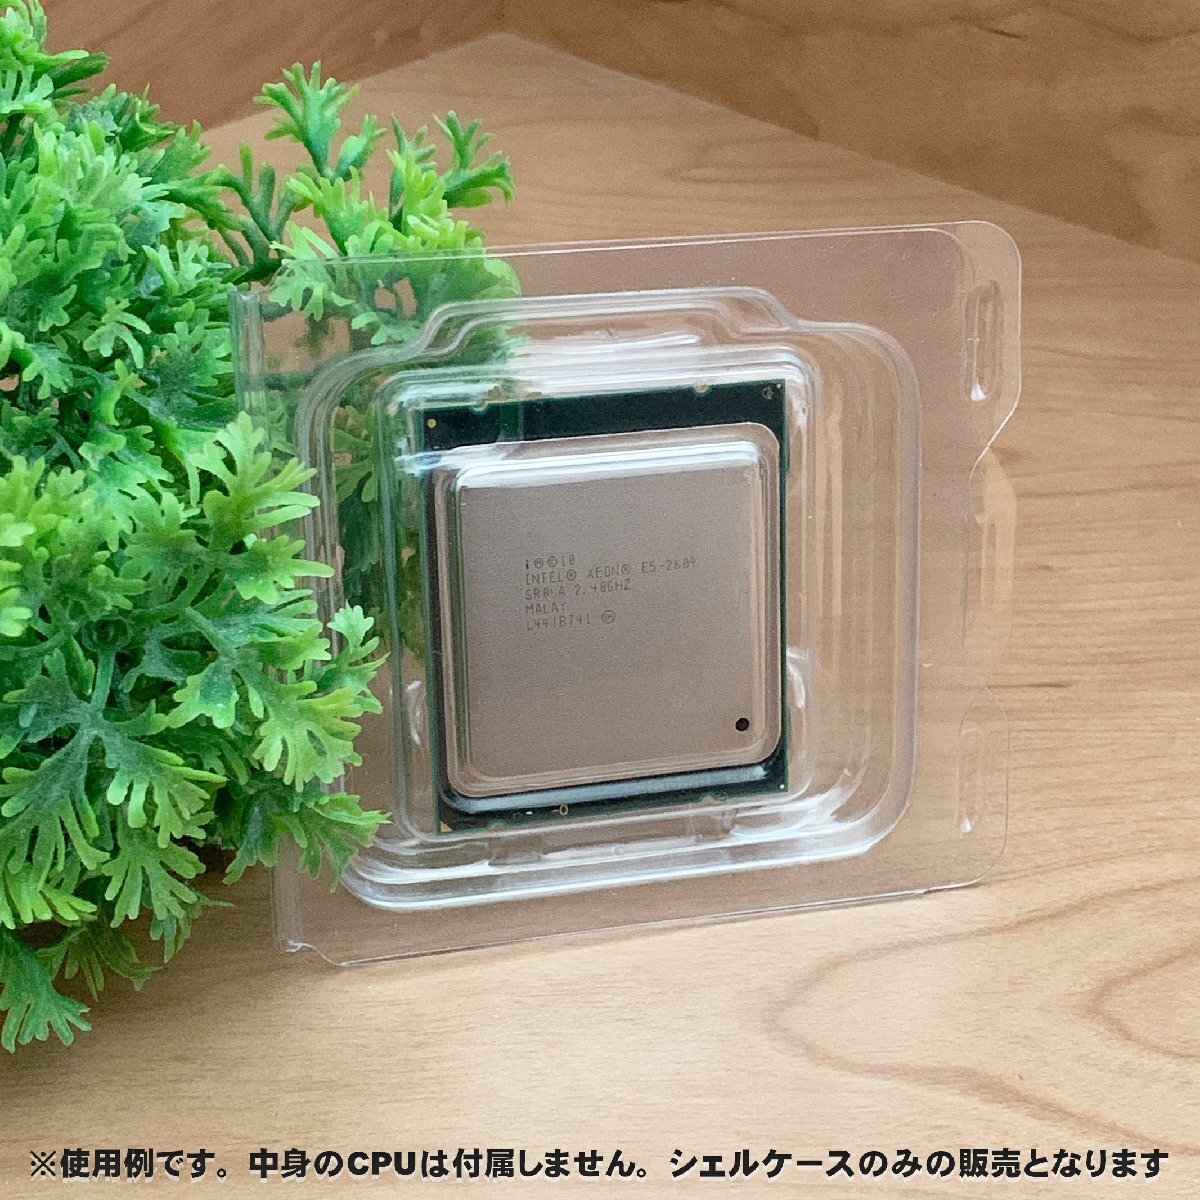 【 LGA2011 】CPU XEON シェルケース LGA 用 プラスチック 保管 収納ケース 5枚セット_画像6